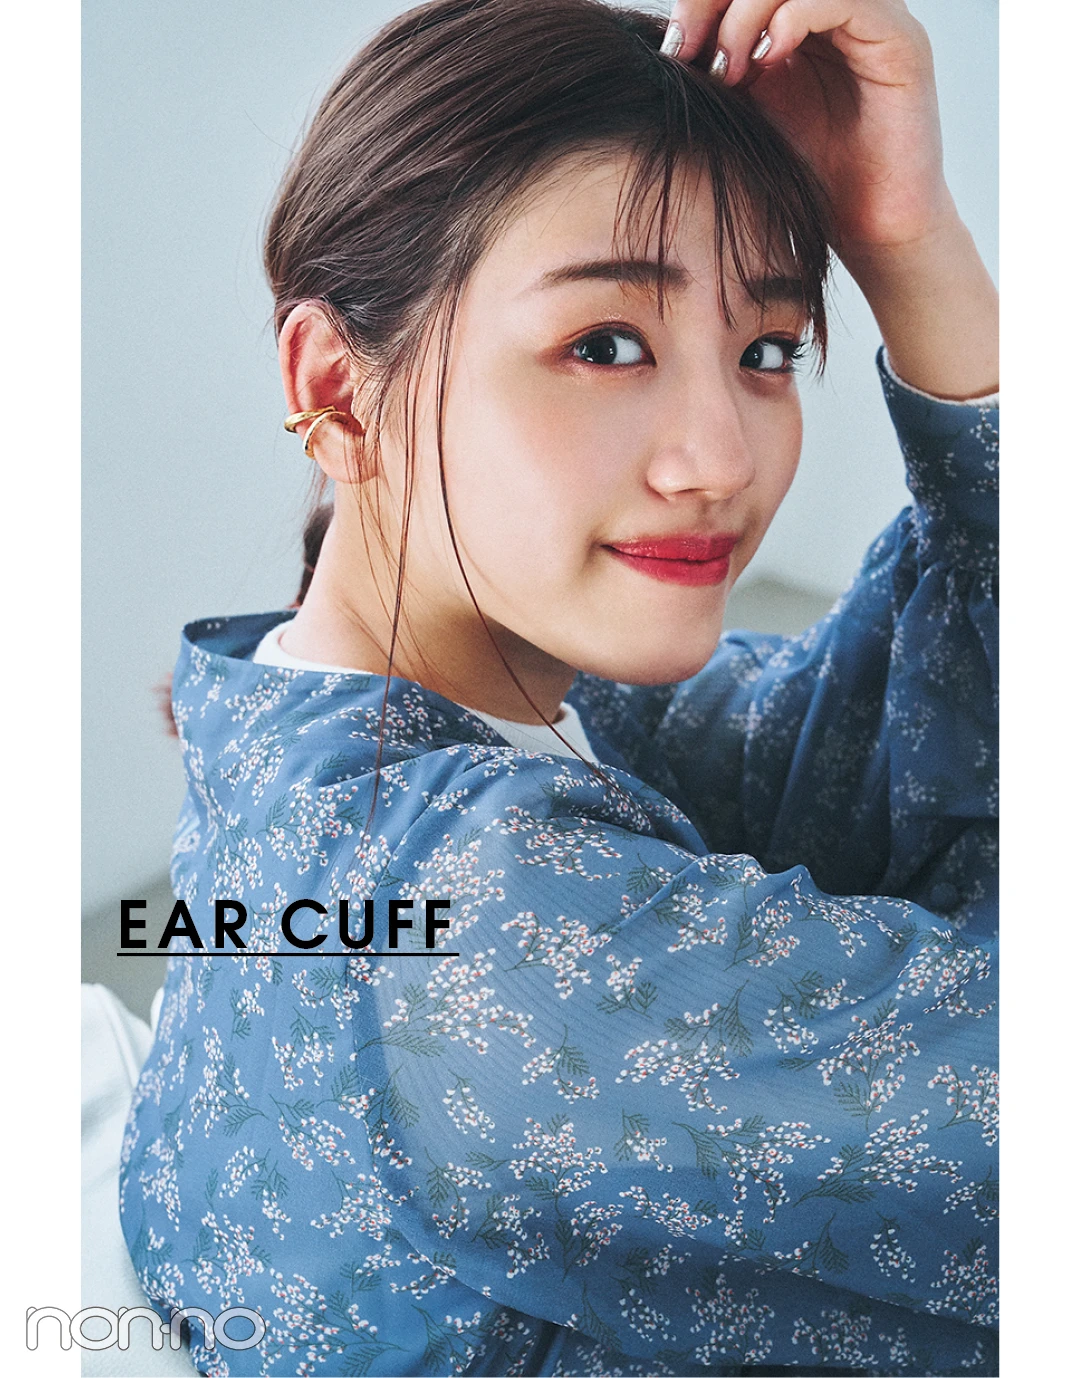 EAR CUFF